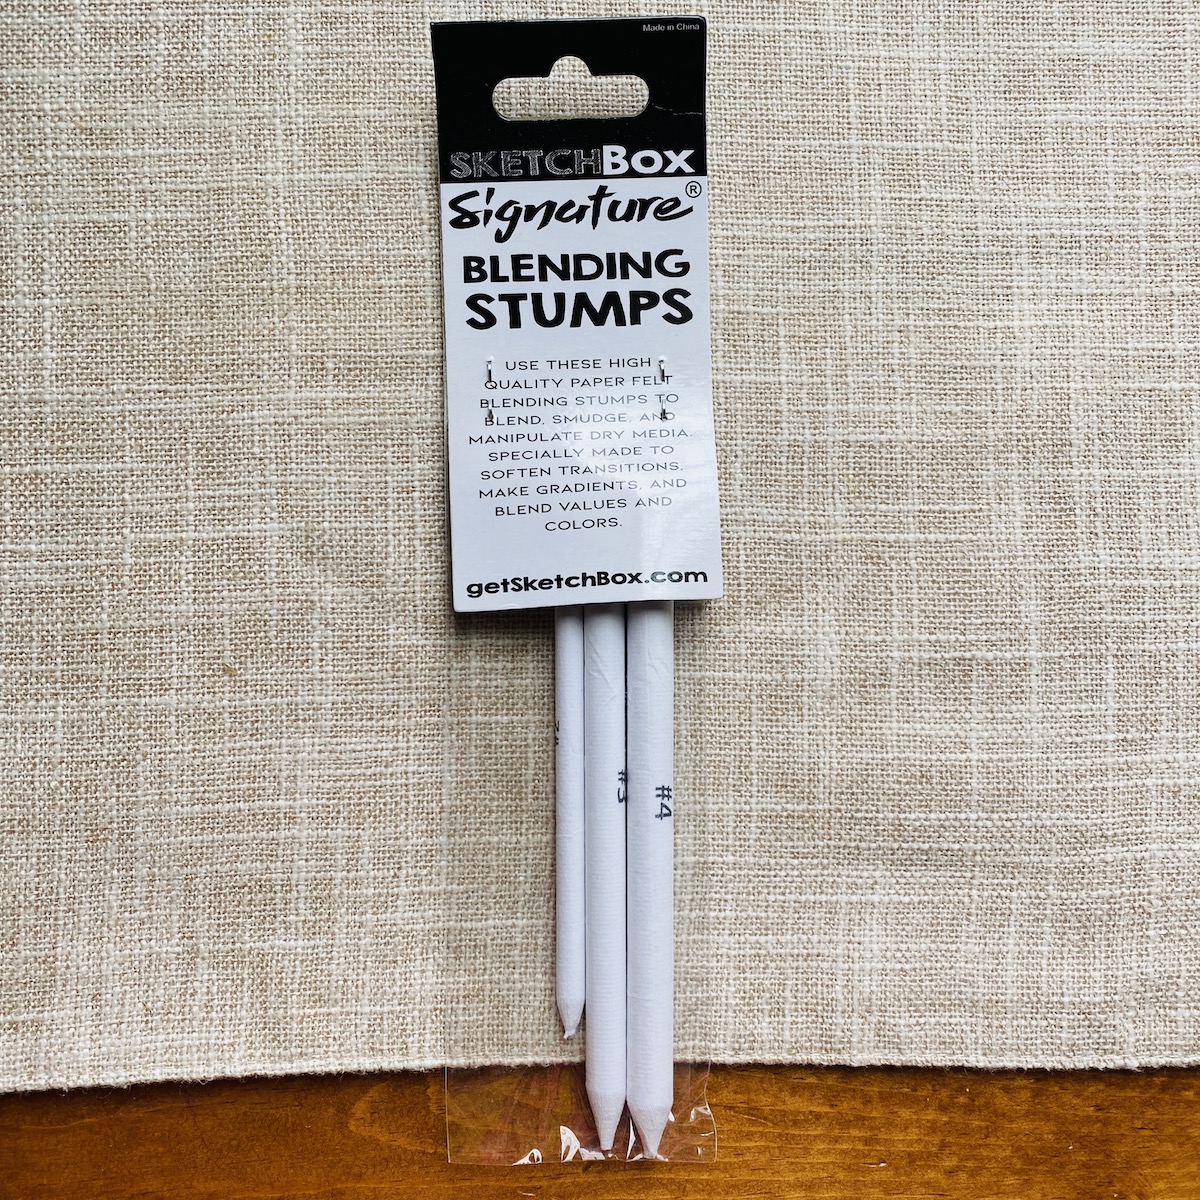 SketchBox Signature Blending Stump set of 3 – ShopSketchBox